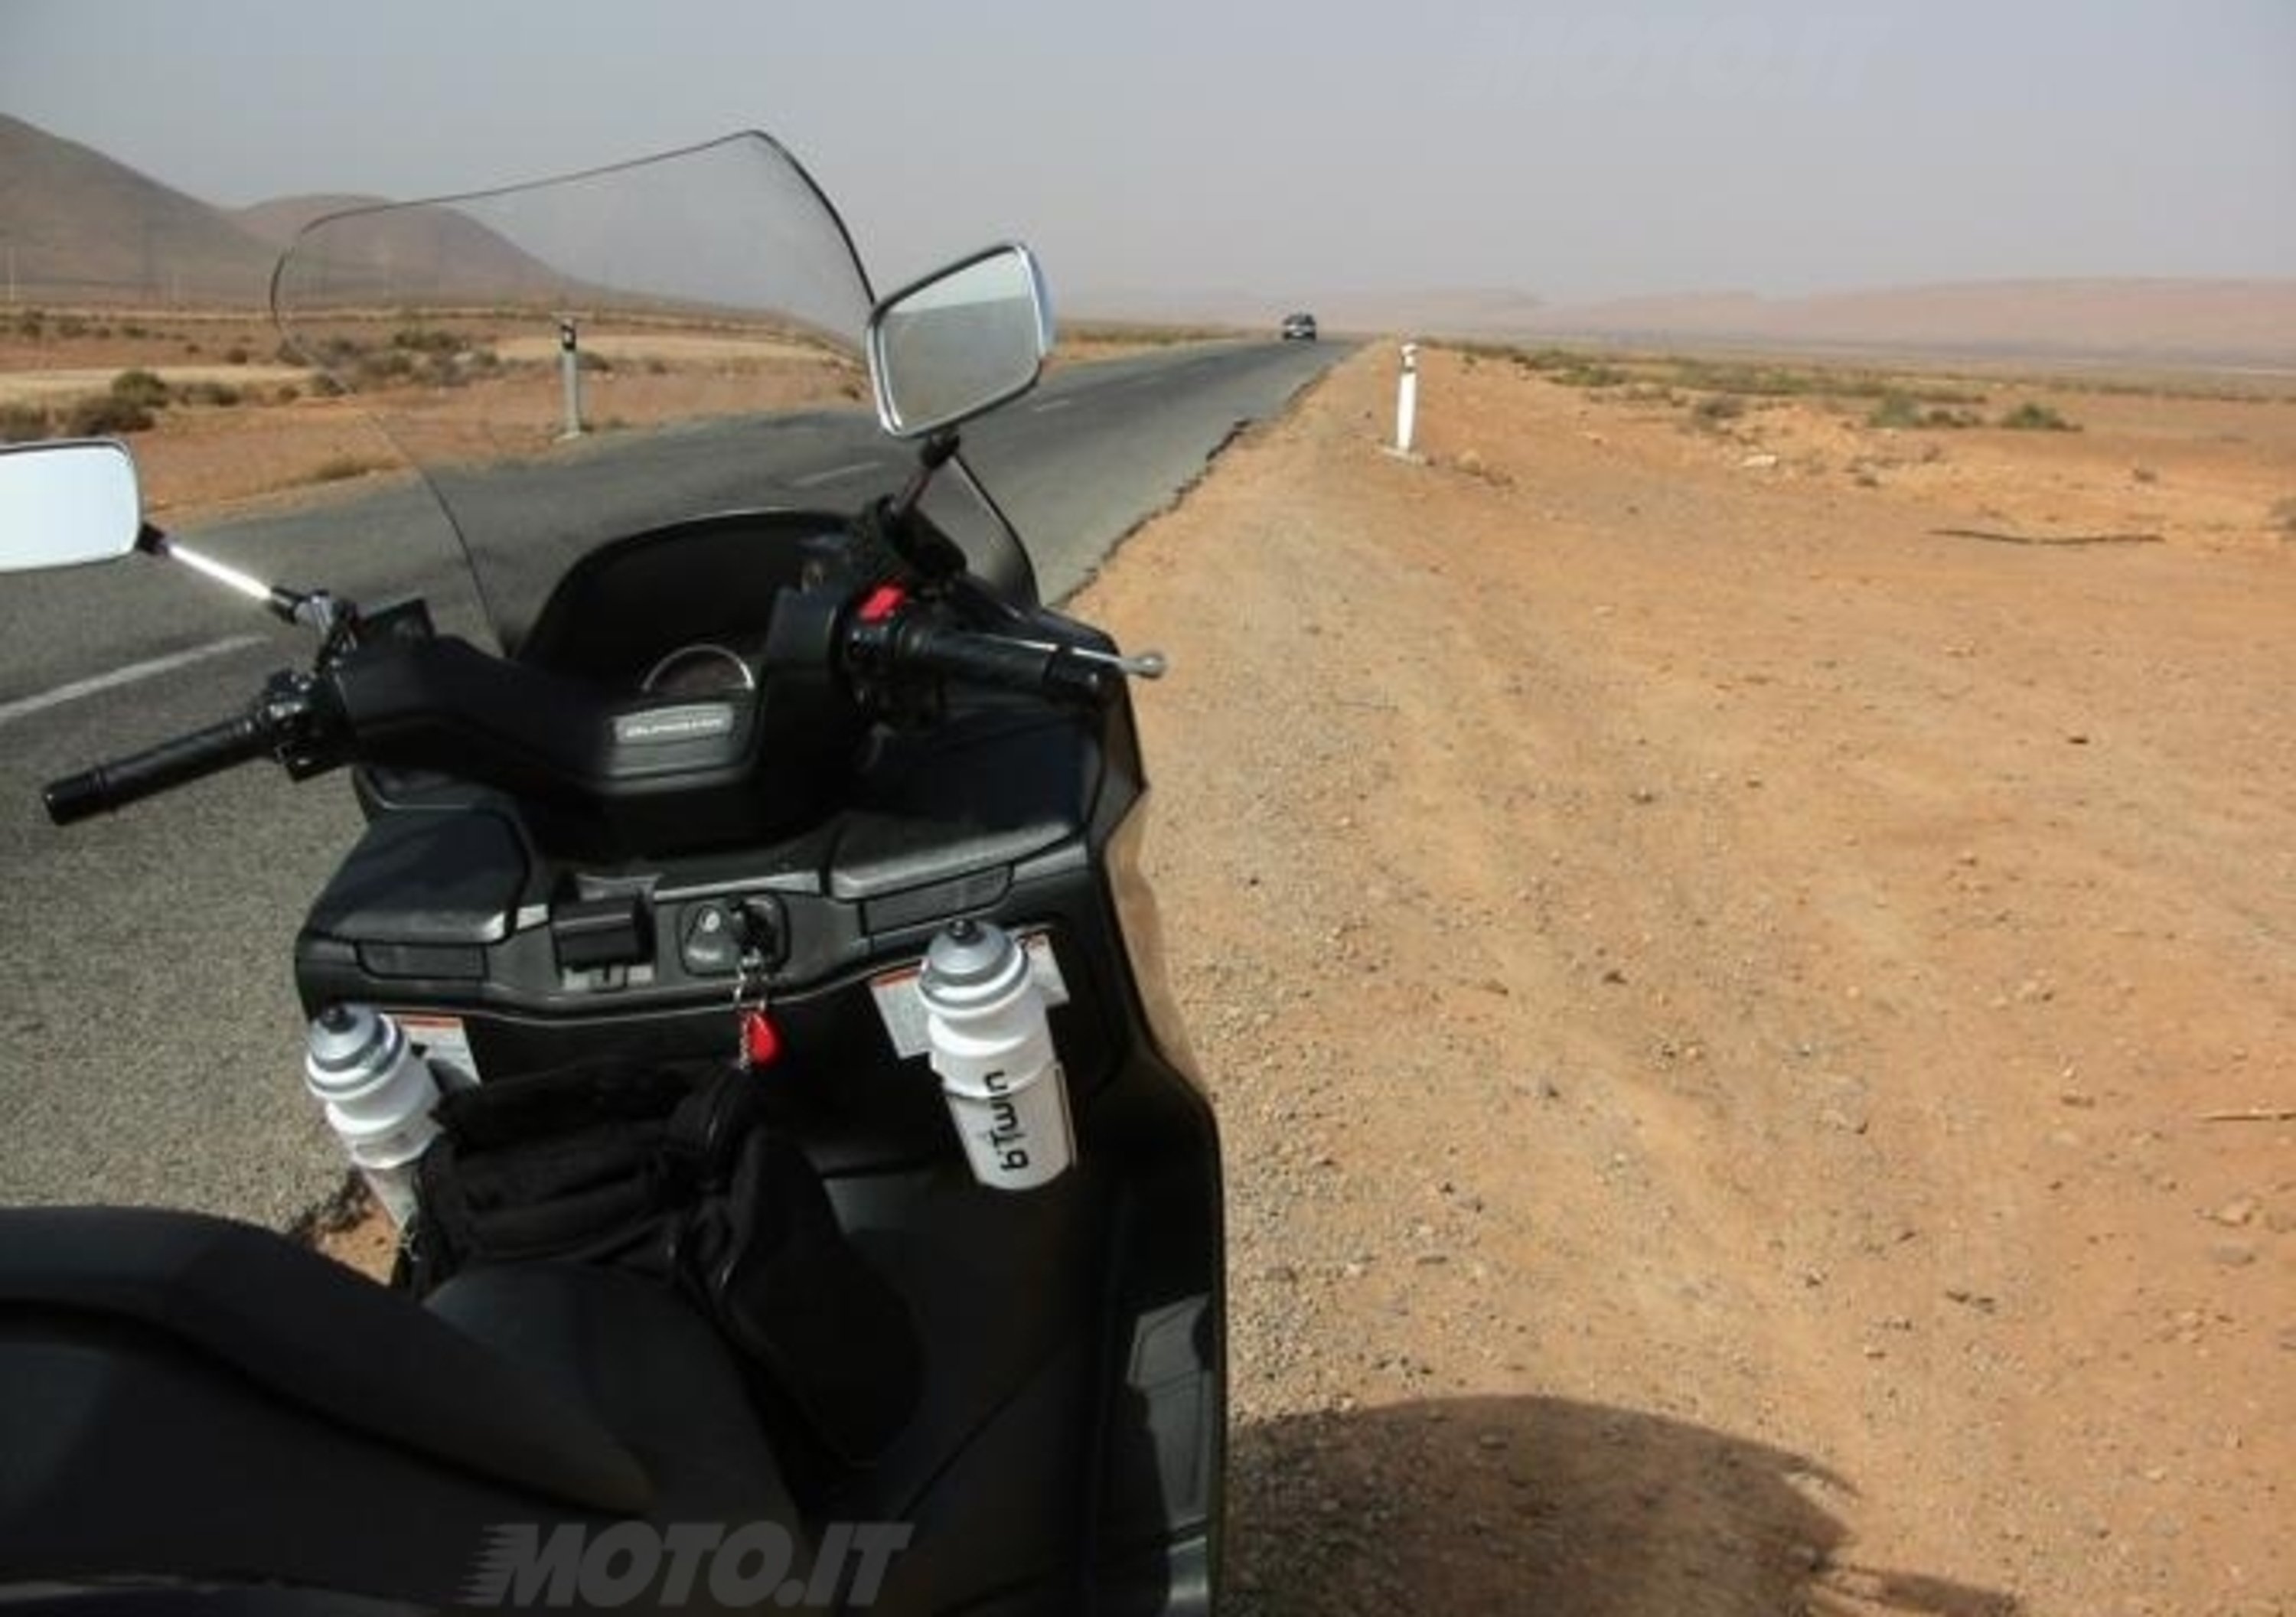 Viaggi: Milano-Dakar e ritorno in sella al Suzuki Burgman 400